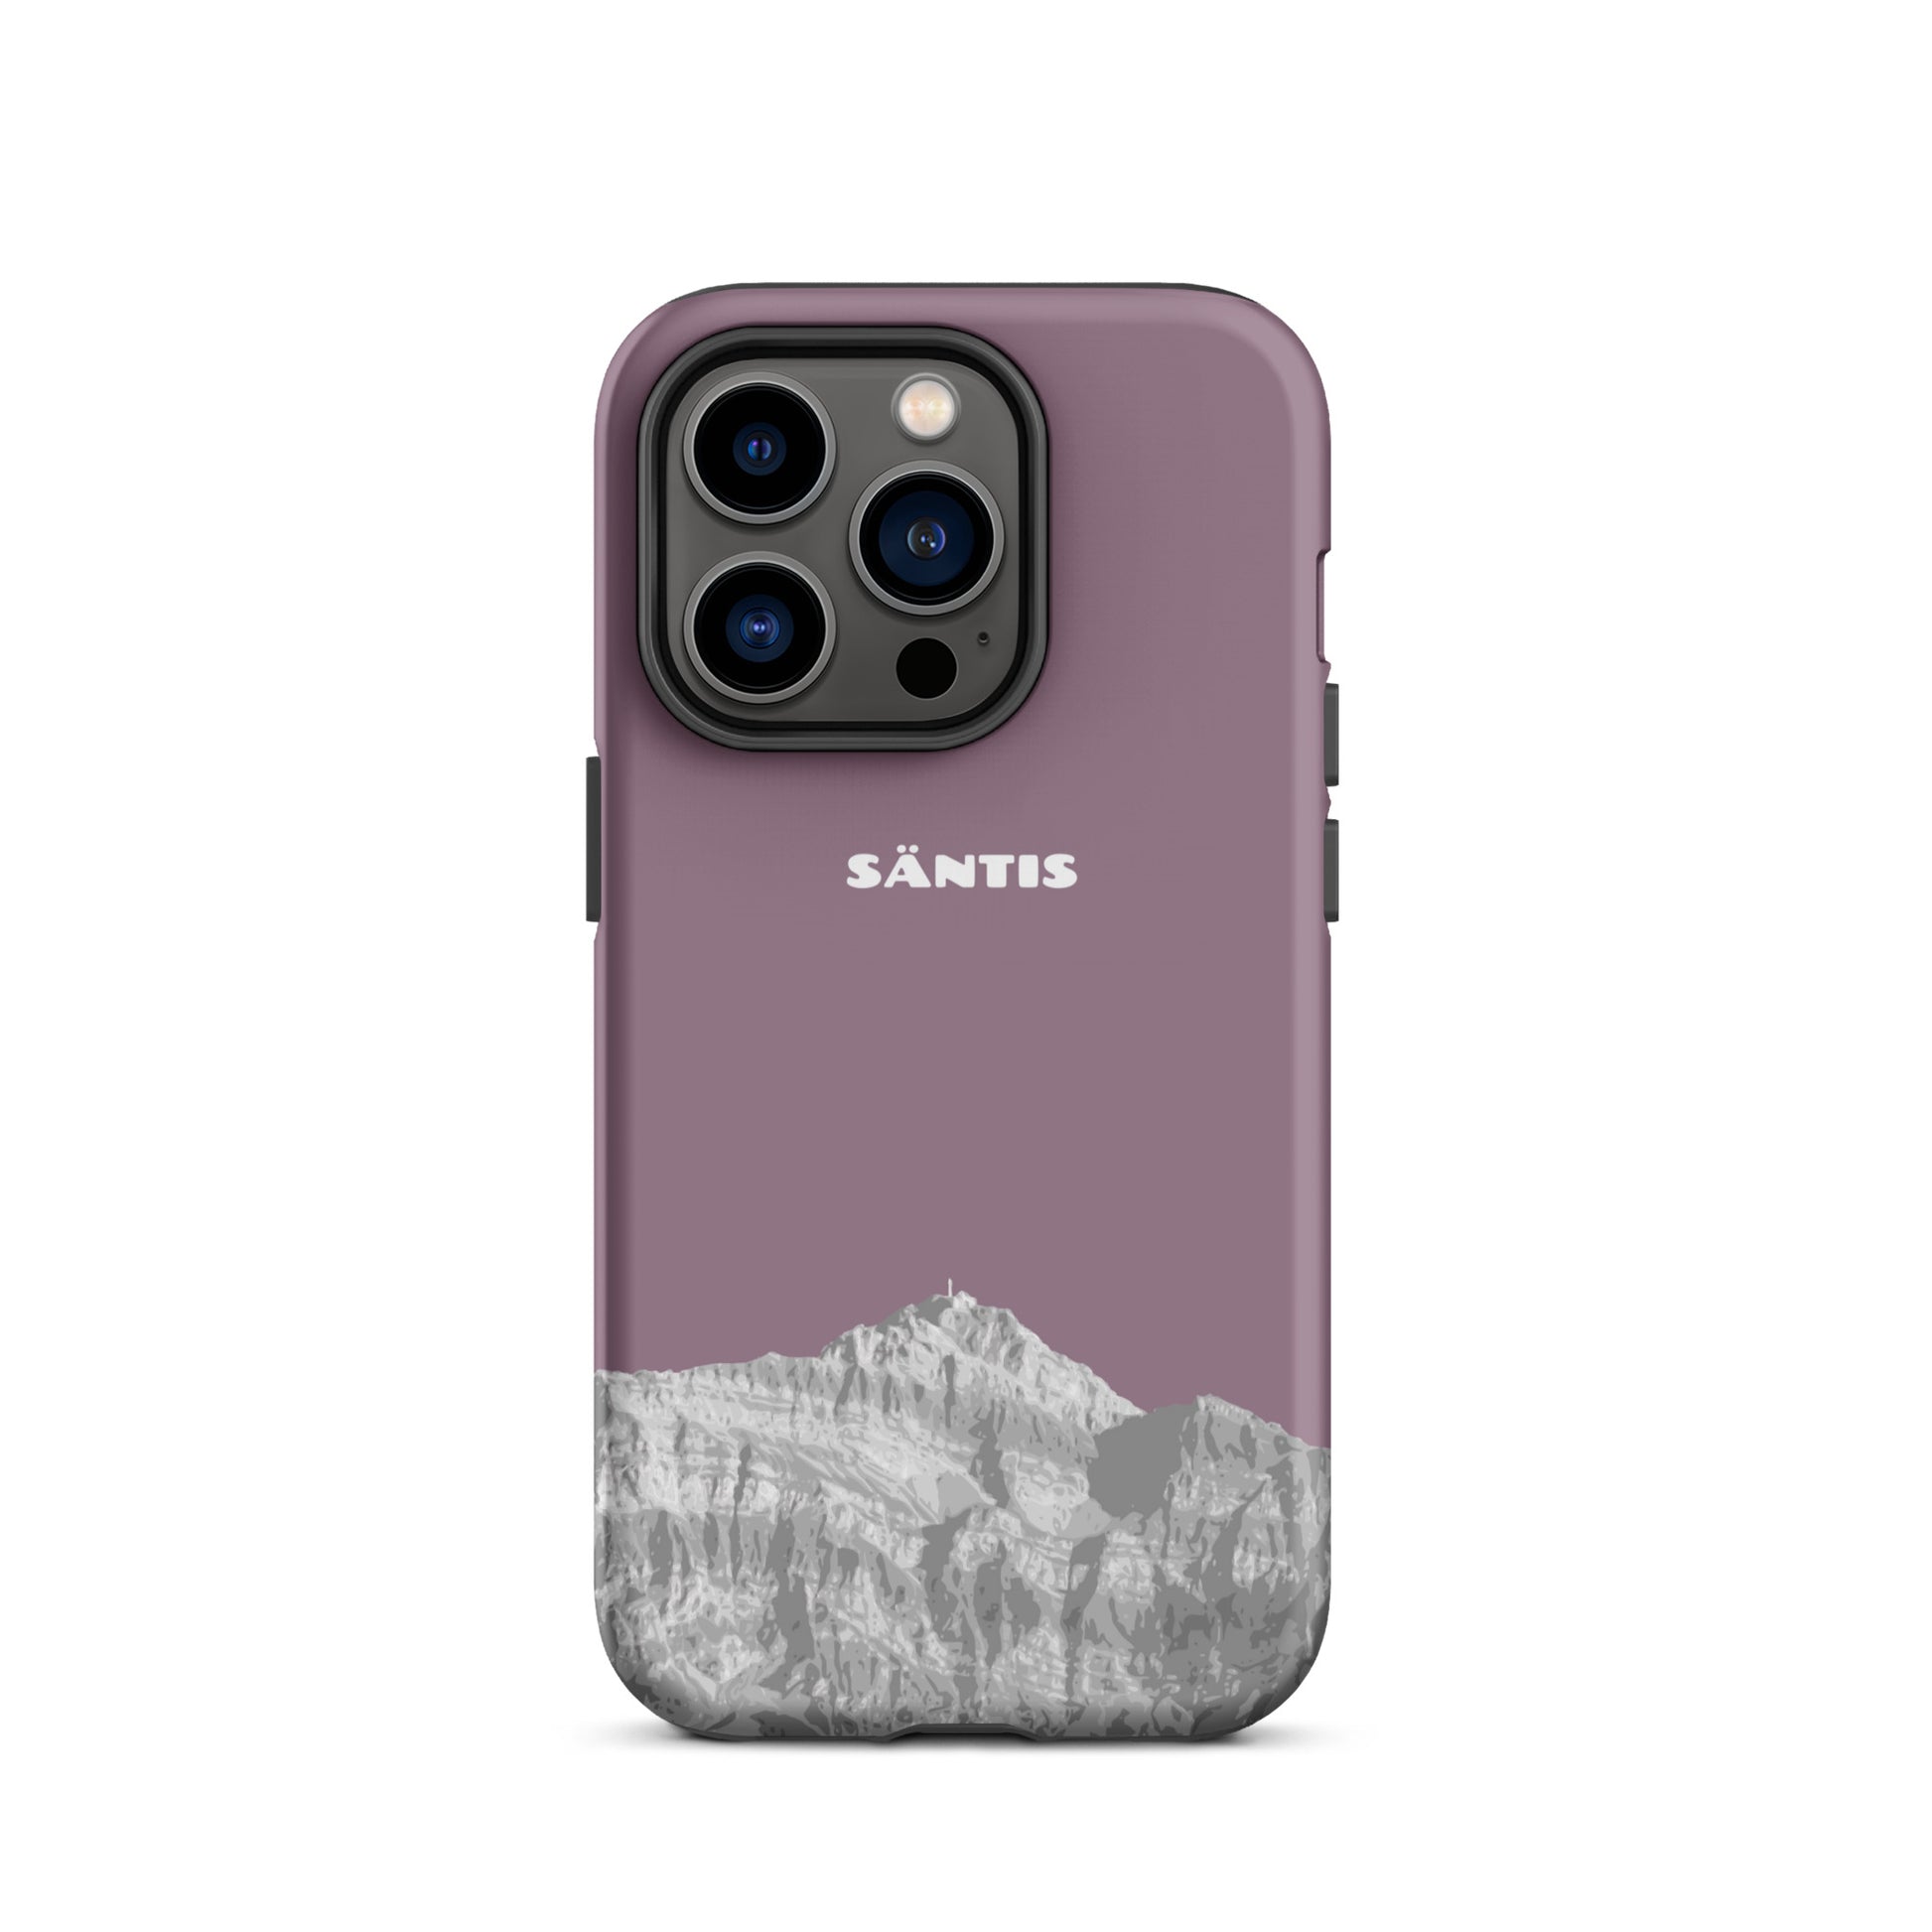 Hülle für das iPhone 14 Pro von Apple in der Farbe Pastellviolett, dass den Säntis im Alpstein zeigt.